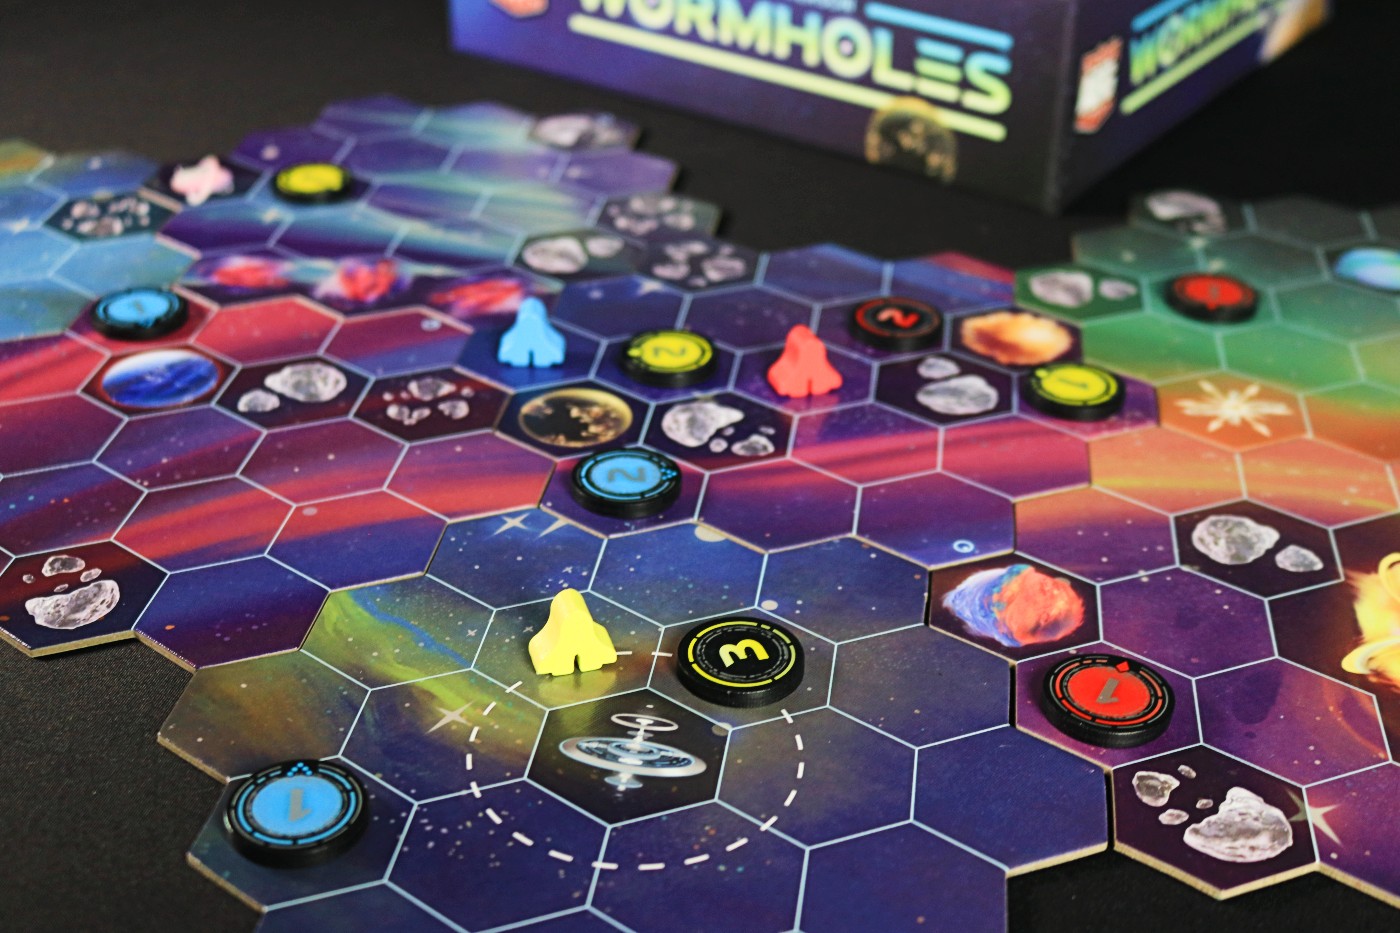 Wormholes map